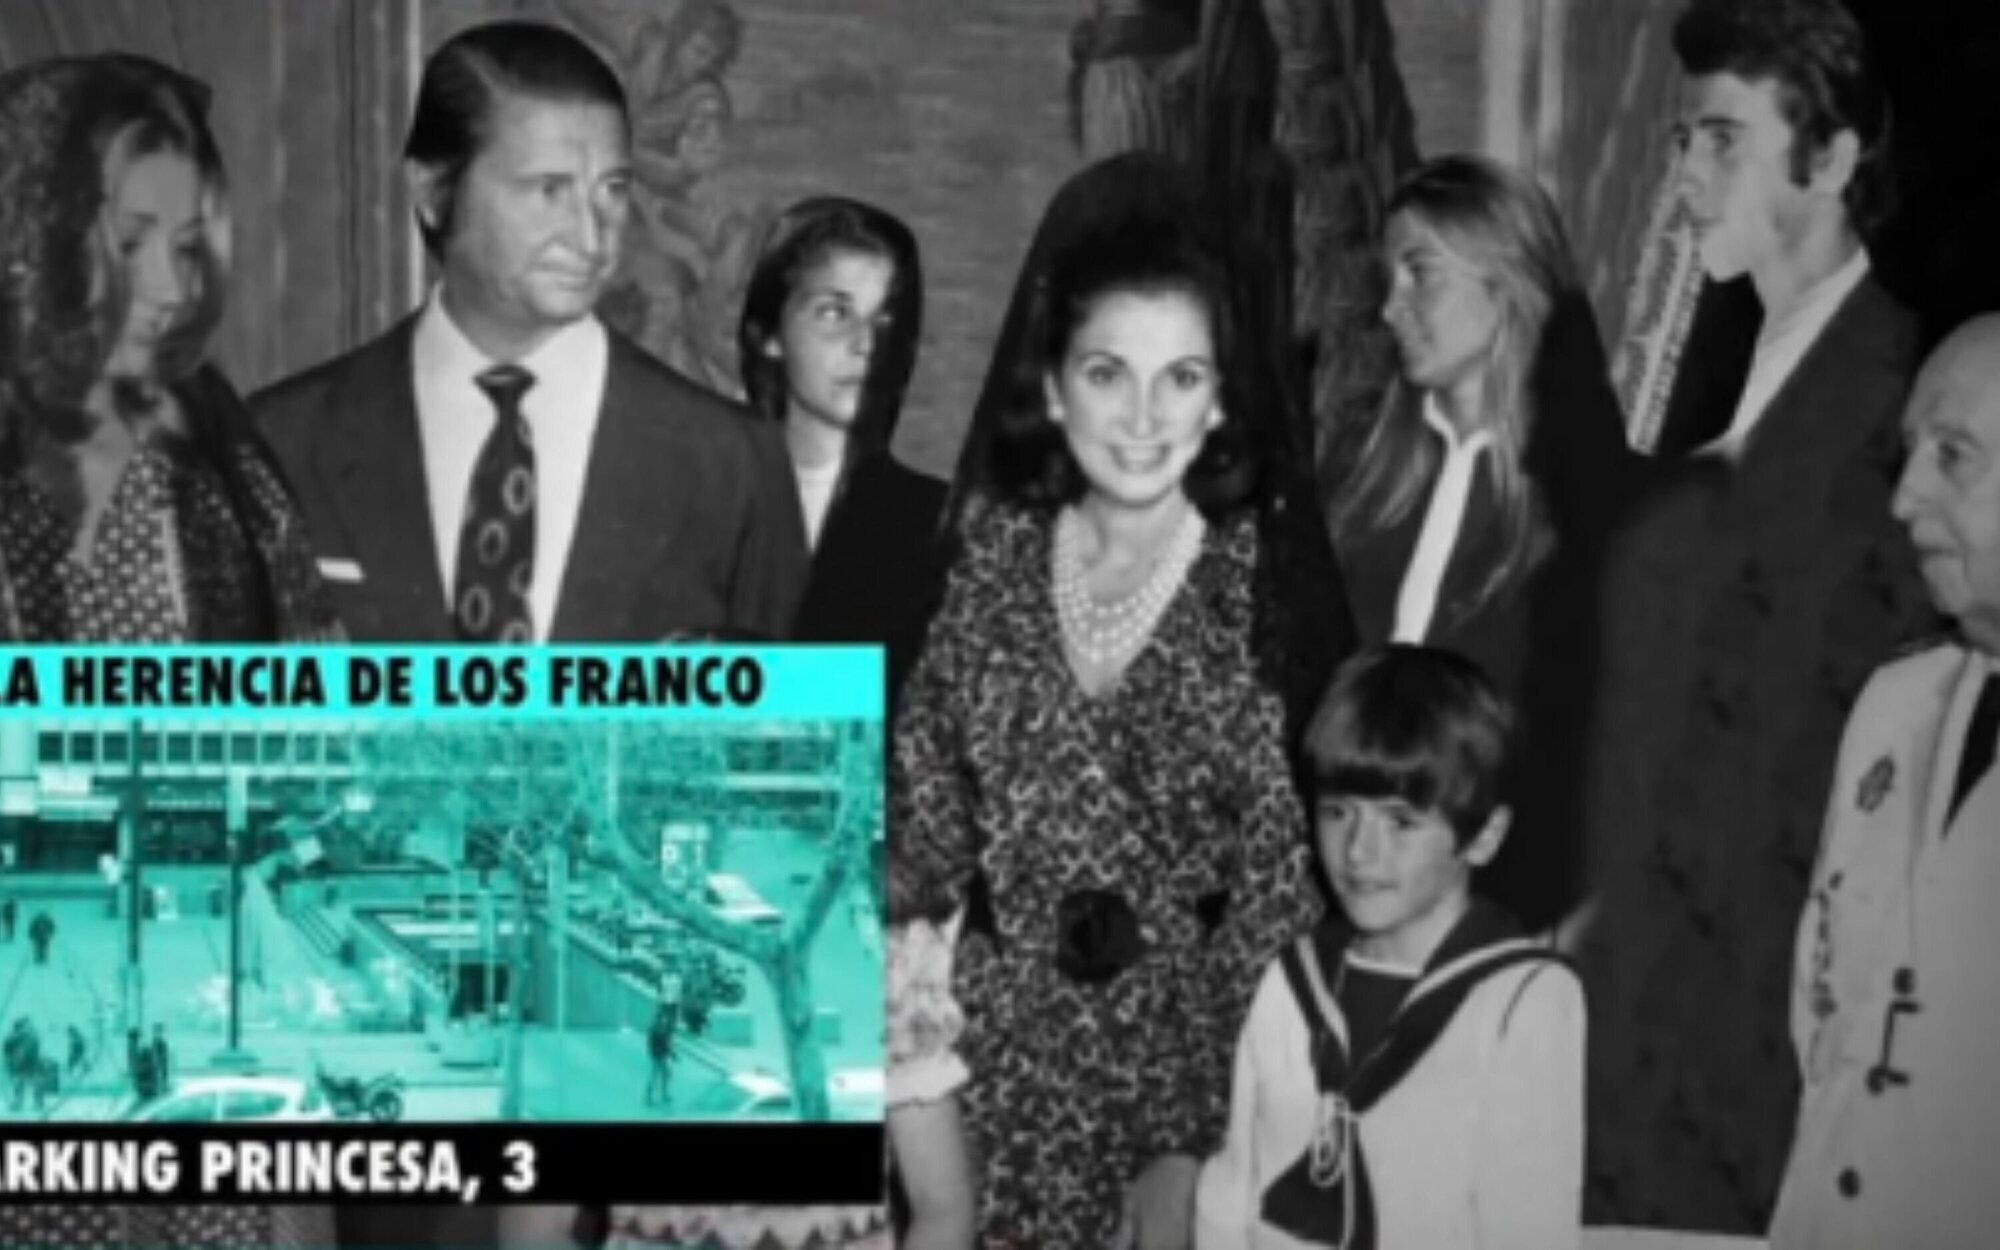 La Justicia ratifica su apoyo a Mediaset por la demanda de la familia Franco por "La herencia de los Franco"